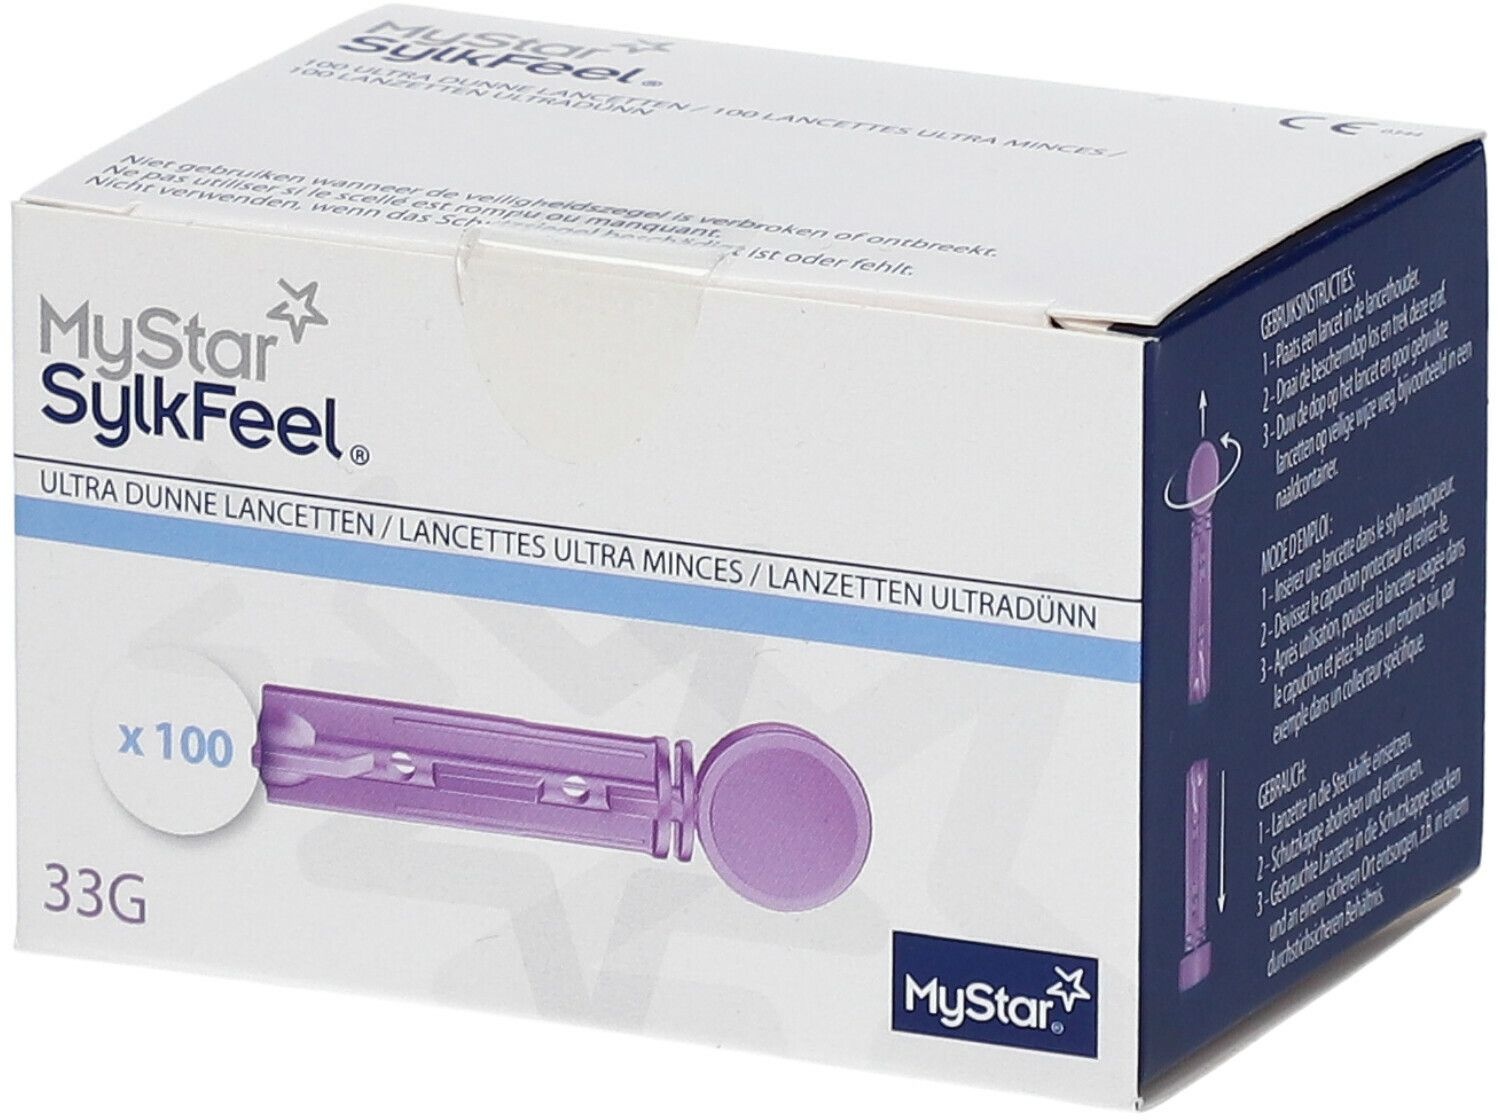 MyStar® SylkfeelTM Lancettes ultra minces 33G 100 pc(s) lancette(s)